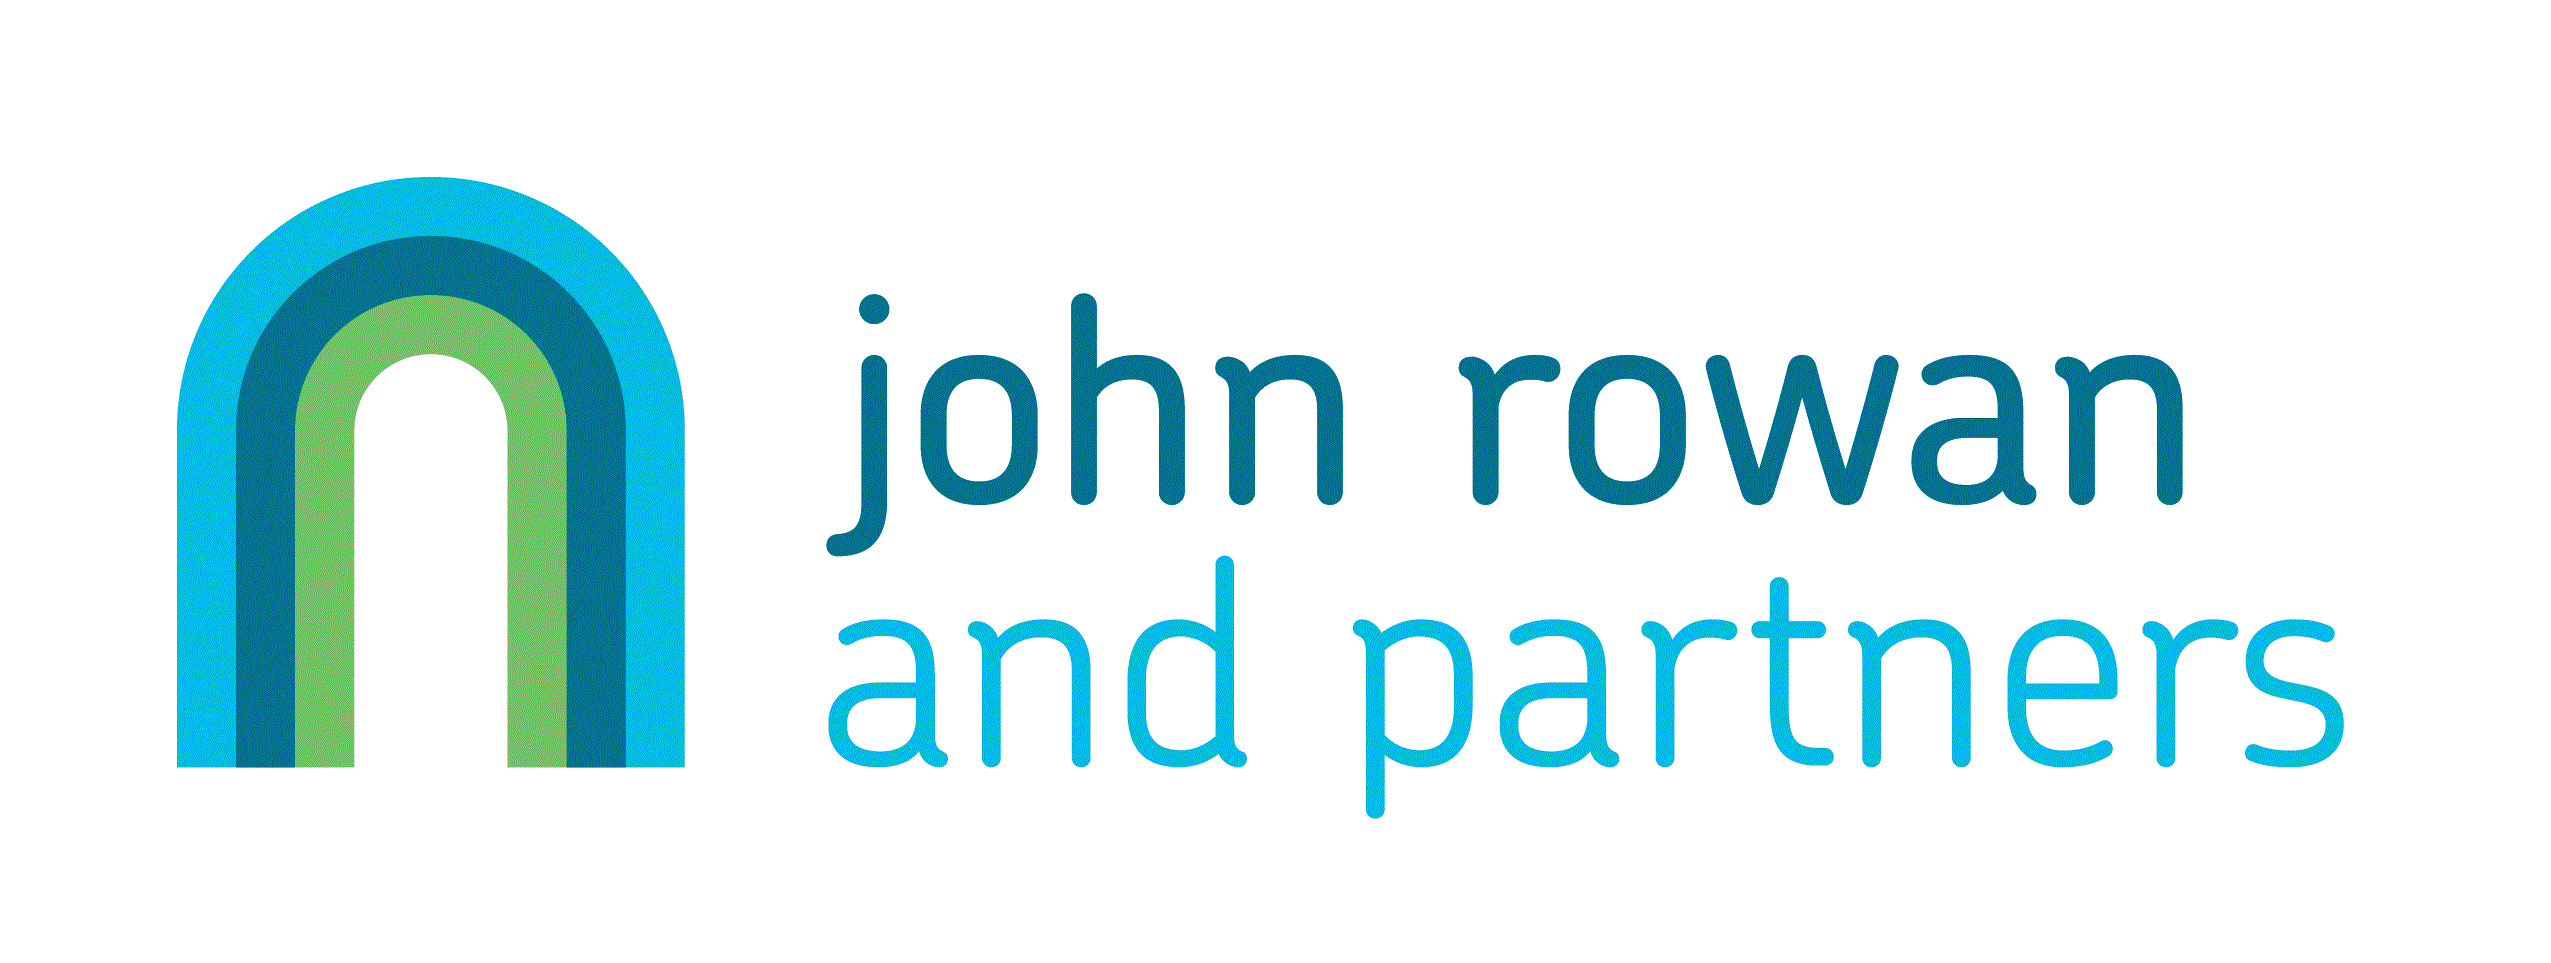 John Rowan & Partners